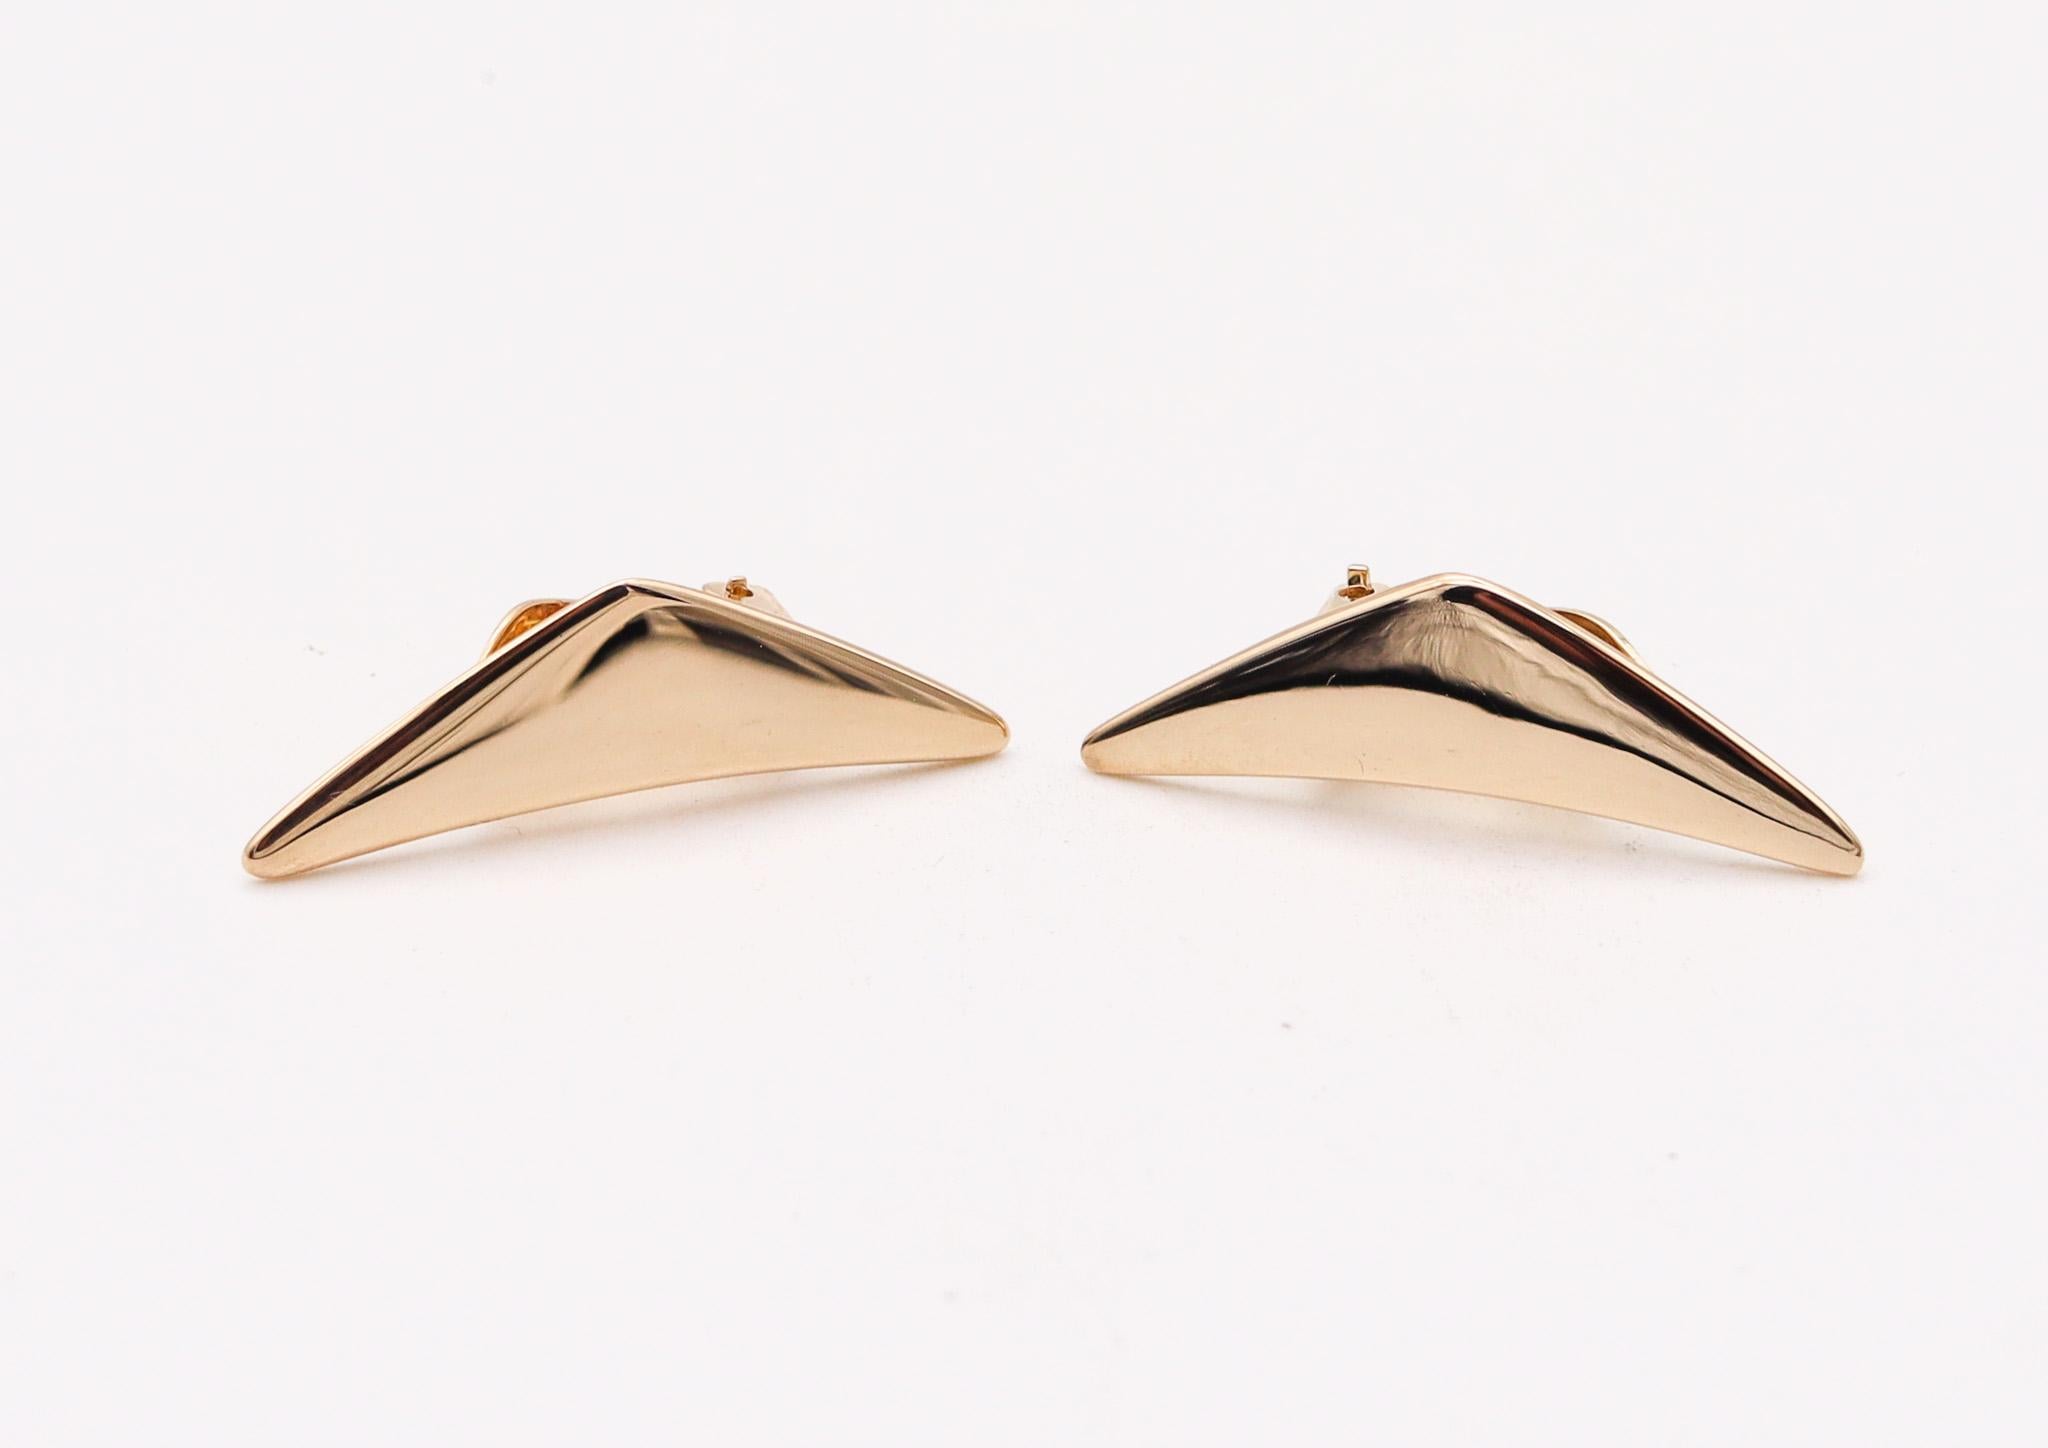 Geometrische Ohrringe, entworfen von Bent Gabrielsen für Hans Hansen.

Wunderschöne skulpturale Ohrclips, die der Designer Bent Gabrielsen in Kopenhagen, Dänemark, in den 1960er Jahren für das Schmuckhaus Hans Hansen Company entworfen hat. Diese